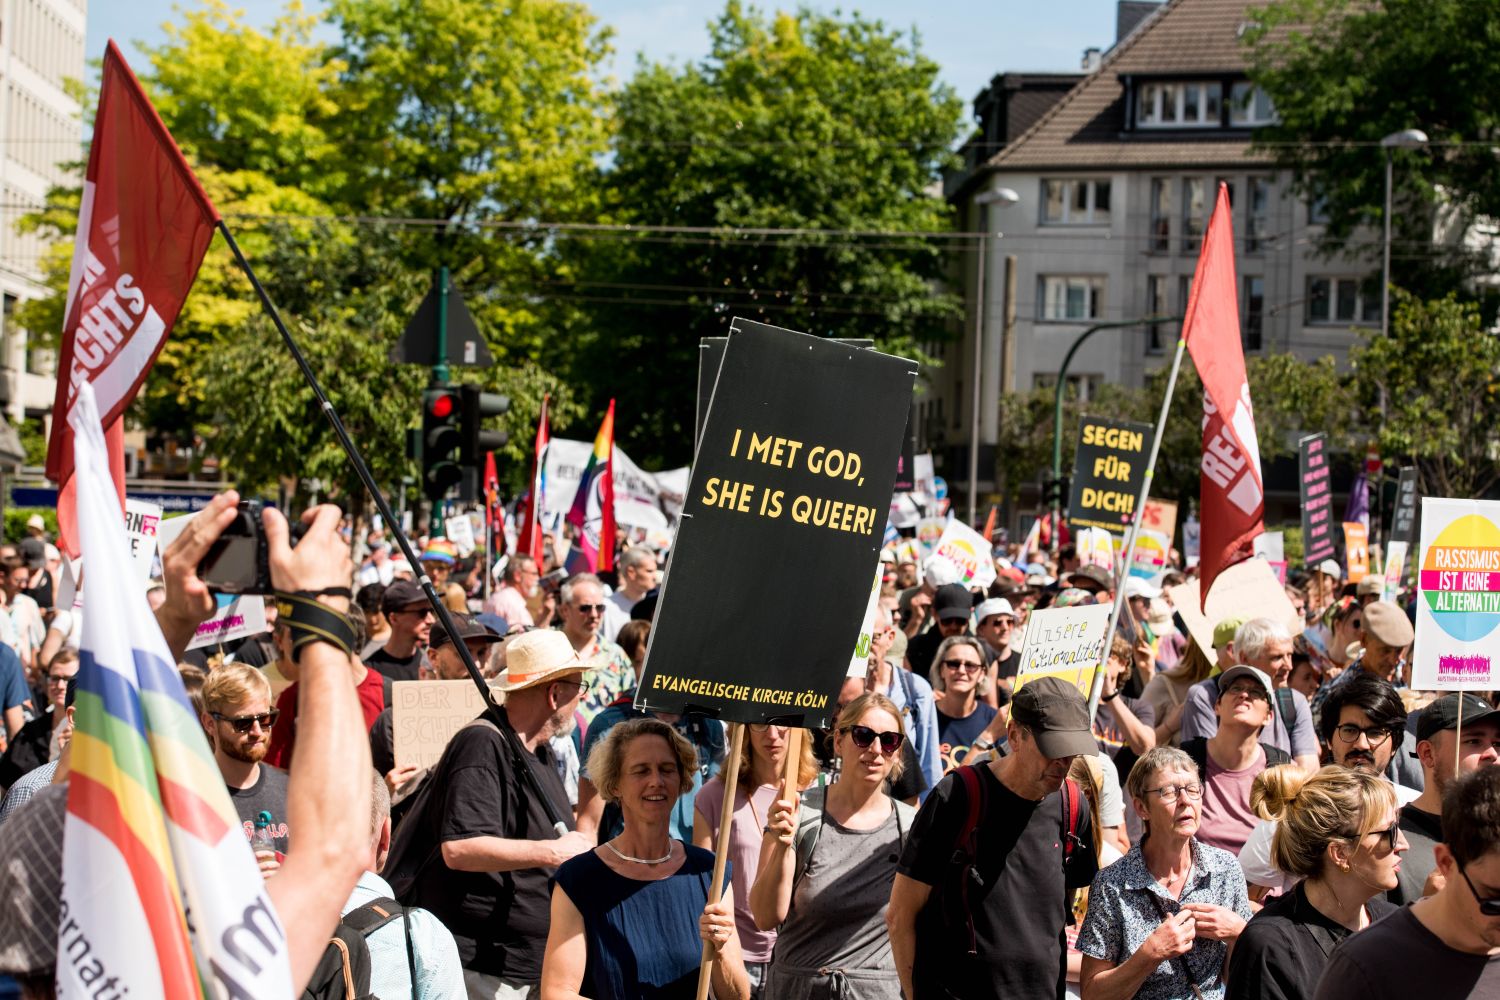 Laut - Bunt - Entschlossen! Protest gegen den Bundesparteitag der AfD in Essen <i>Bild Christian Schneider/R-mediabase</i> <br><a href=/confor2/?bld=82712&pst=82663&aid=615&dc=1133&i1=Christian%20Schneider/R-mediabase><strong>Downloadanfrage</strong></a>  